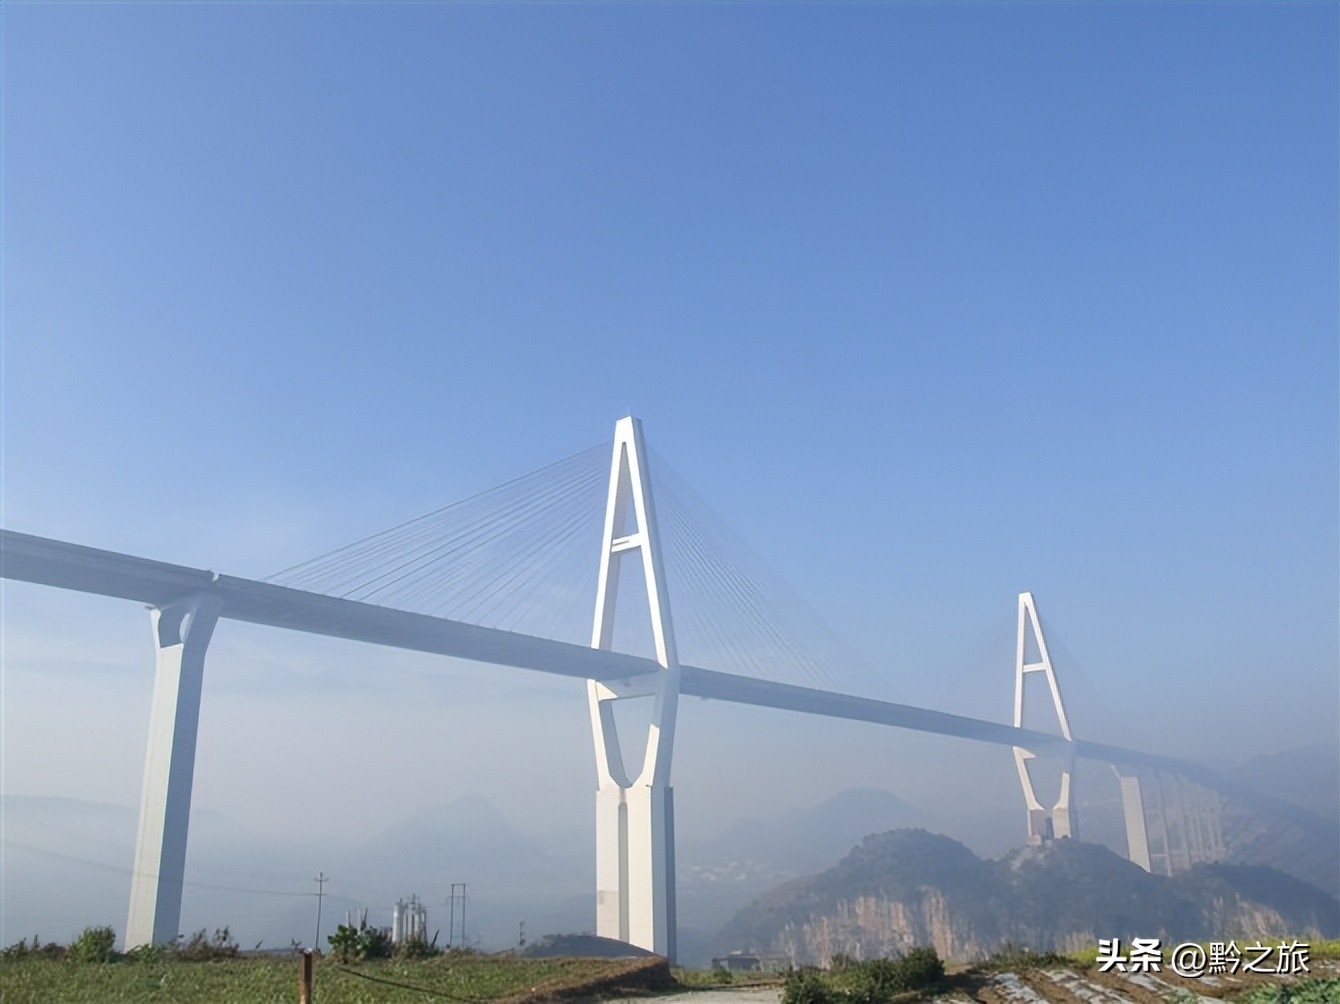 世界第一大桥北盘江大桥观景攻略